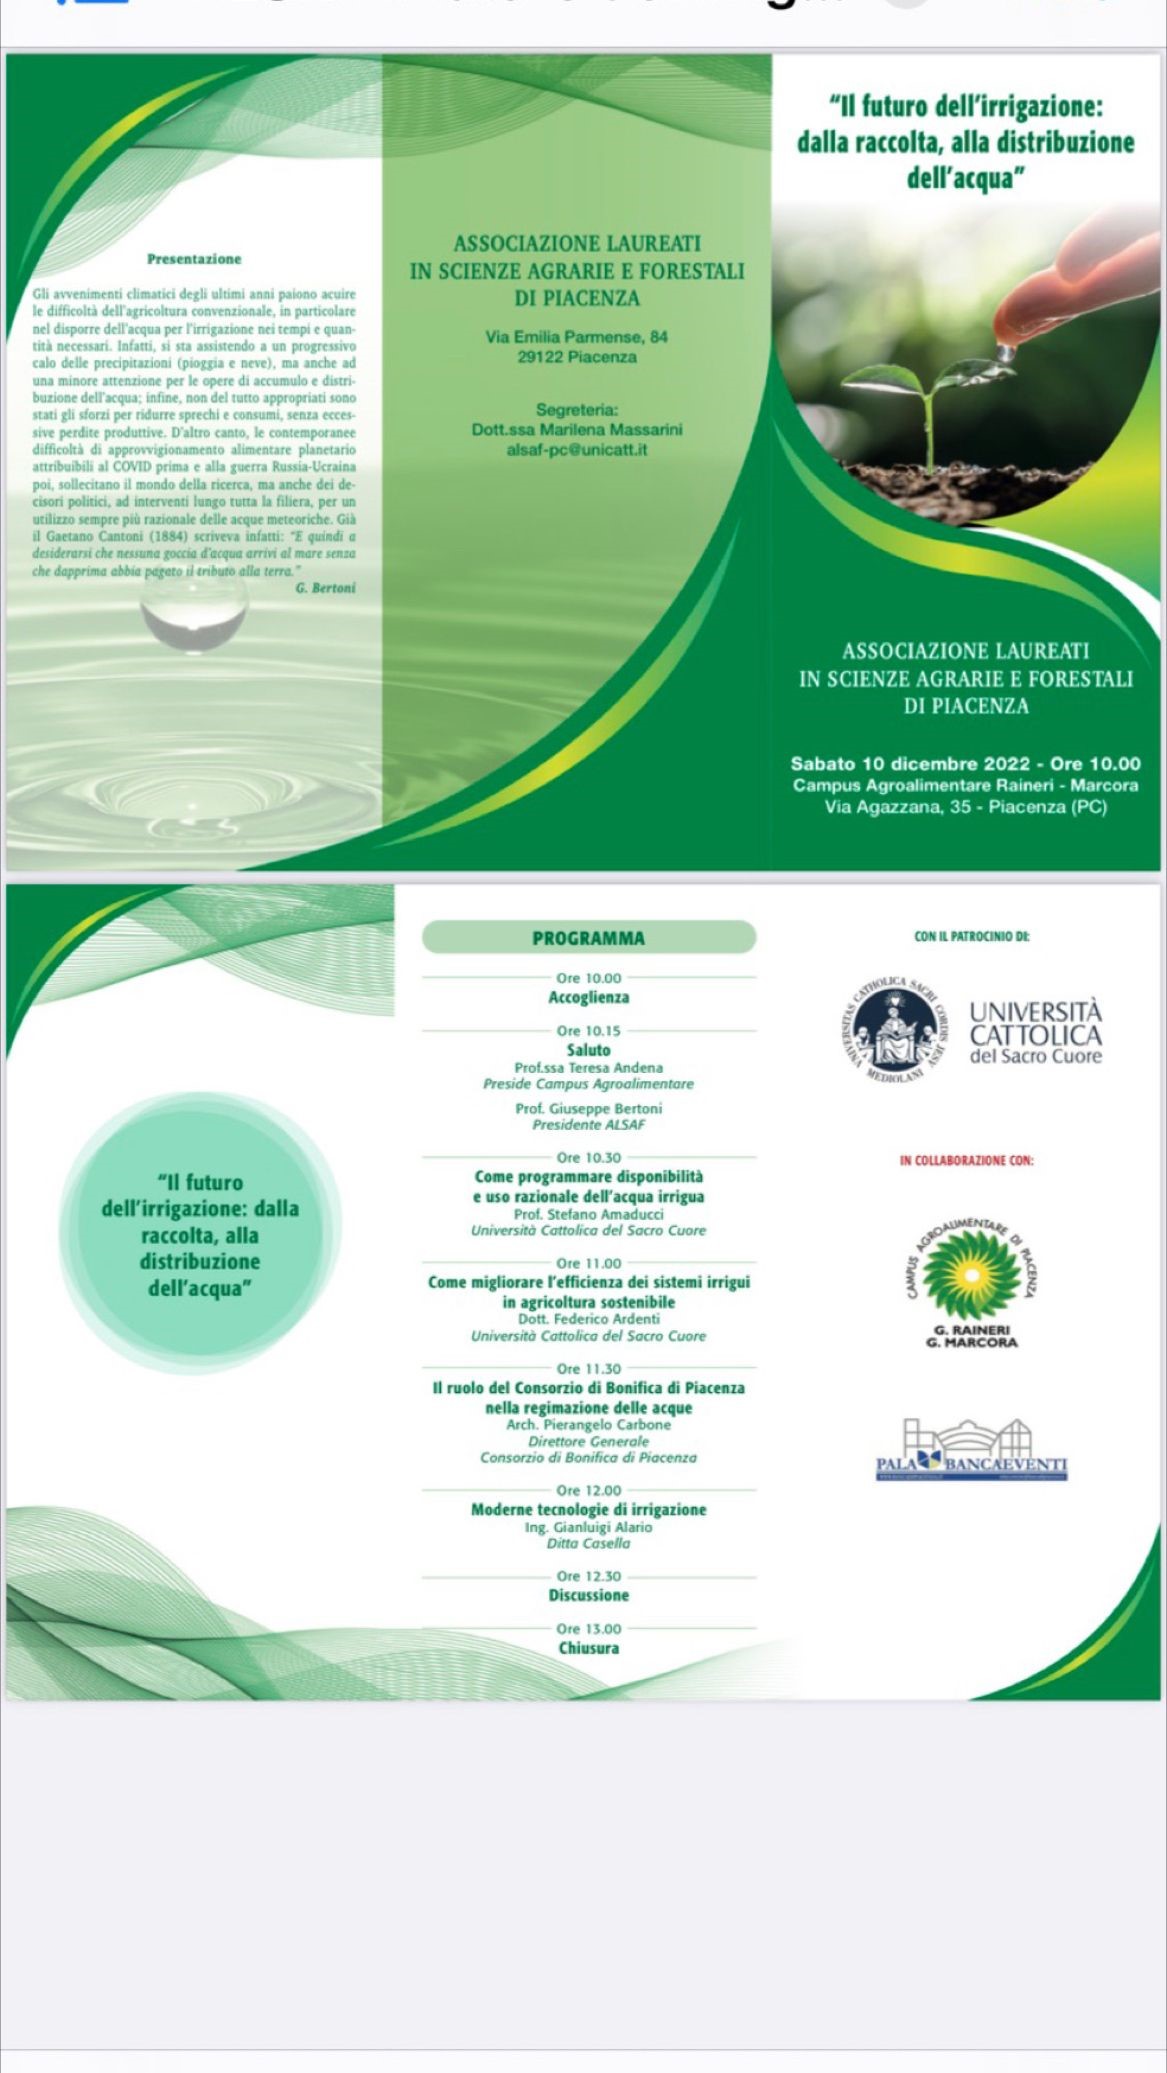 Piacenza, 10.12.2022 – Convegno “Il futuro dell’irrigazione: dalla raccolta alla distribuzione dell’acqua”